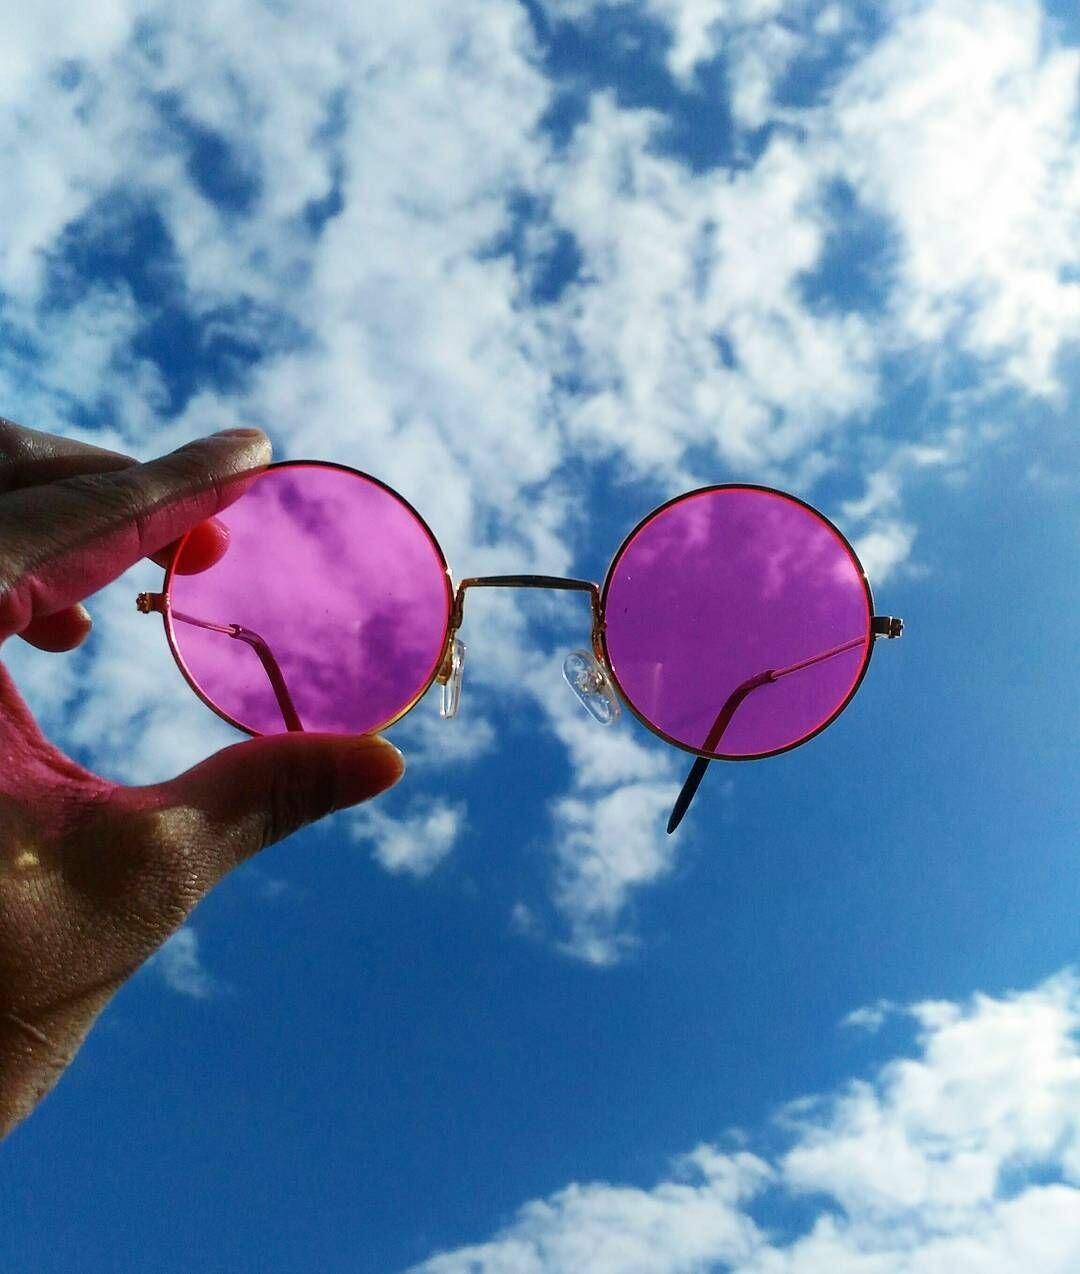 Снять розовые очки, что значит. как снять «розовые очки» | психология отношений